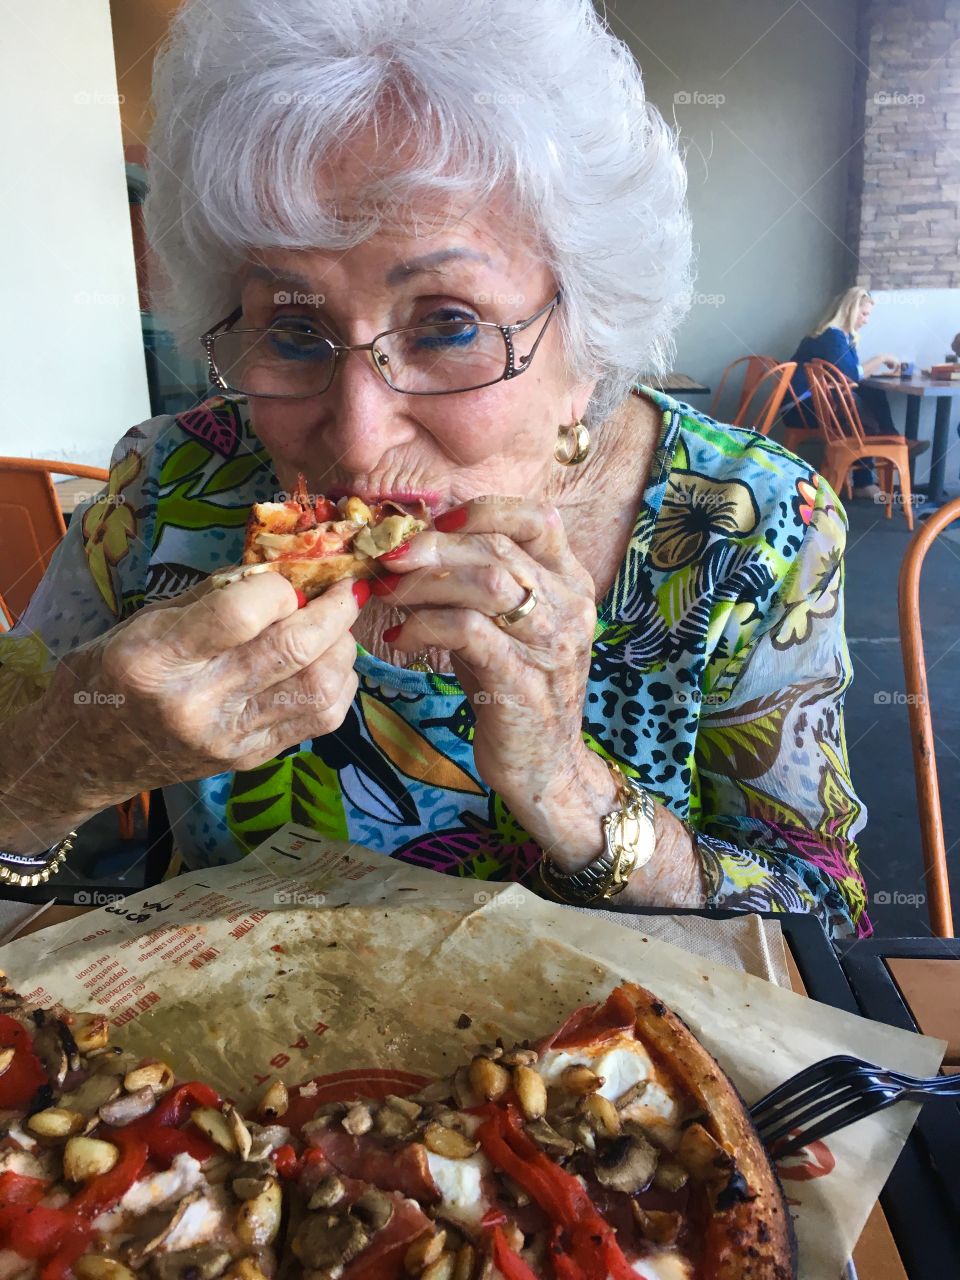 Great grandma eating pizza